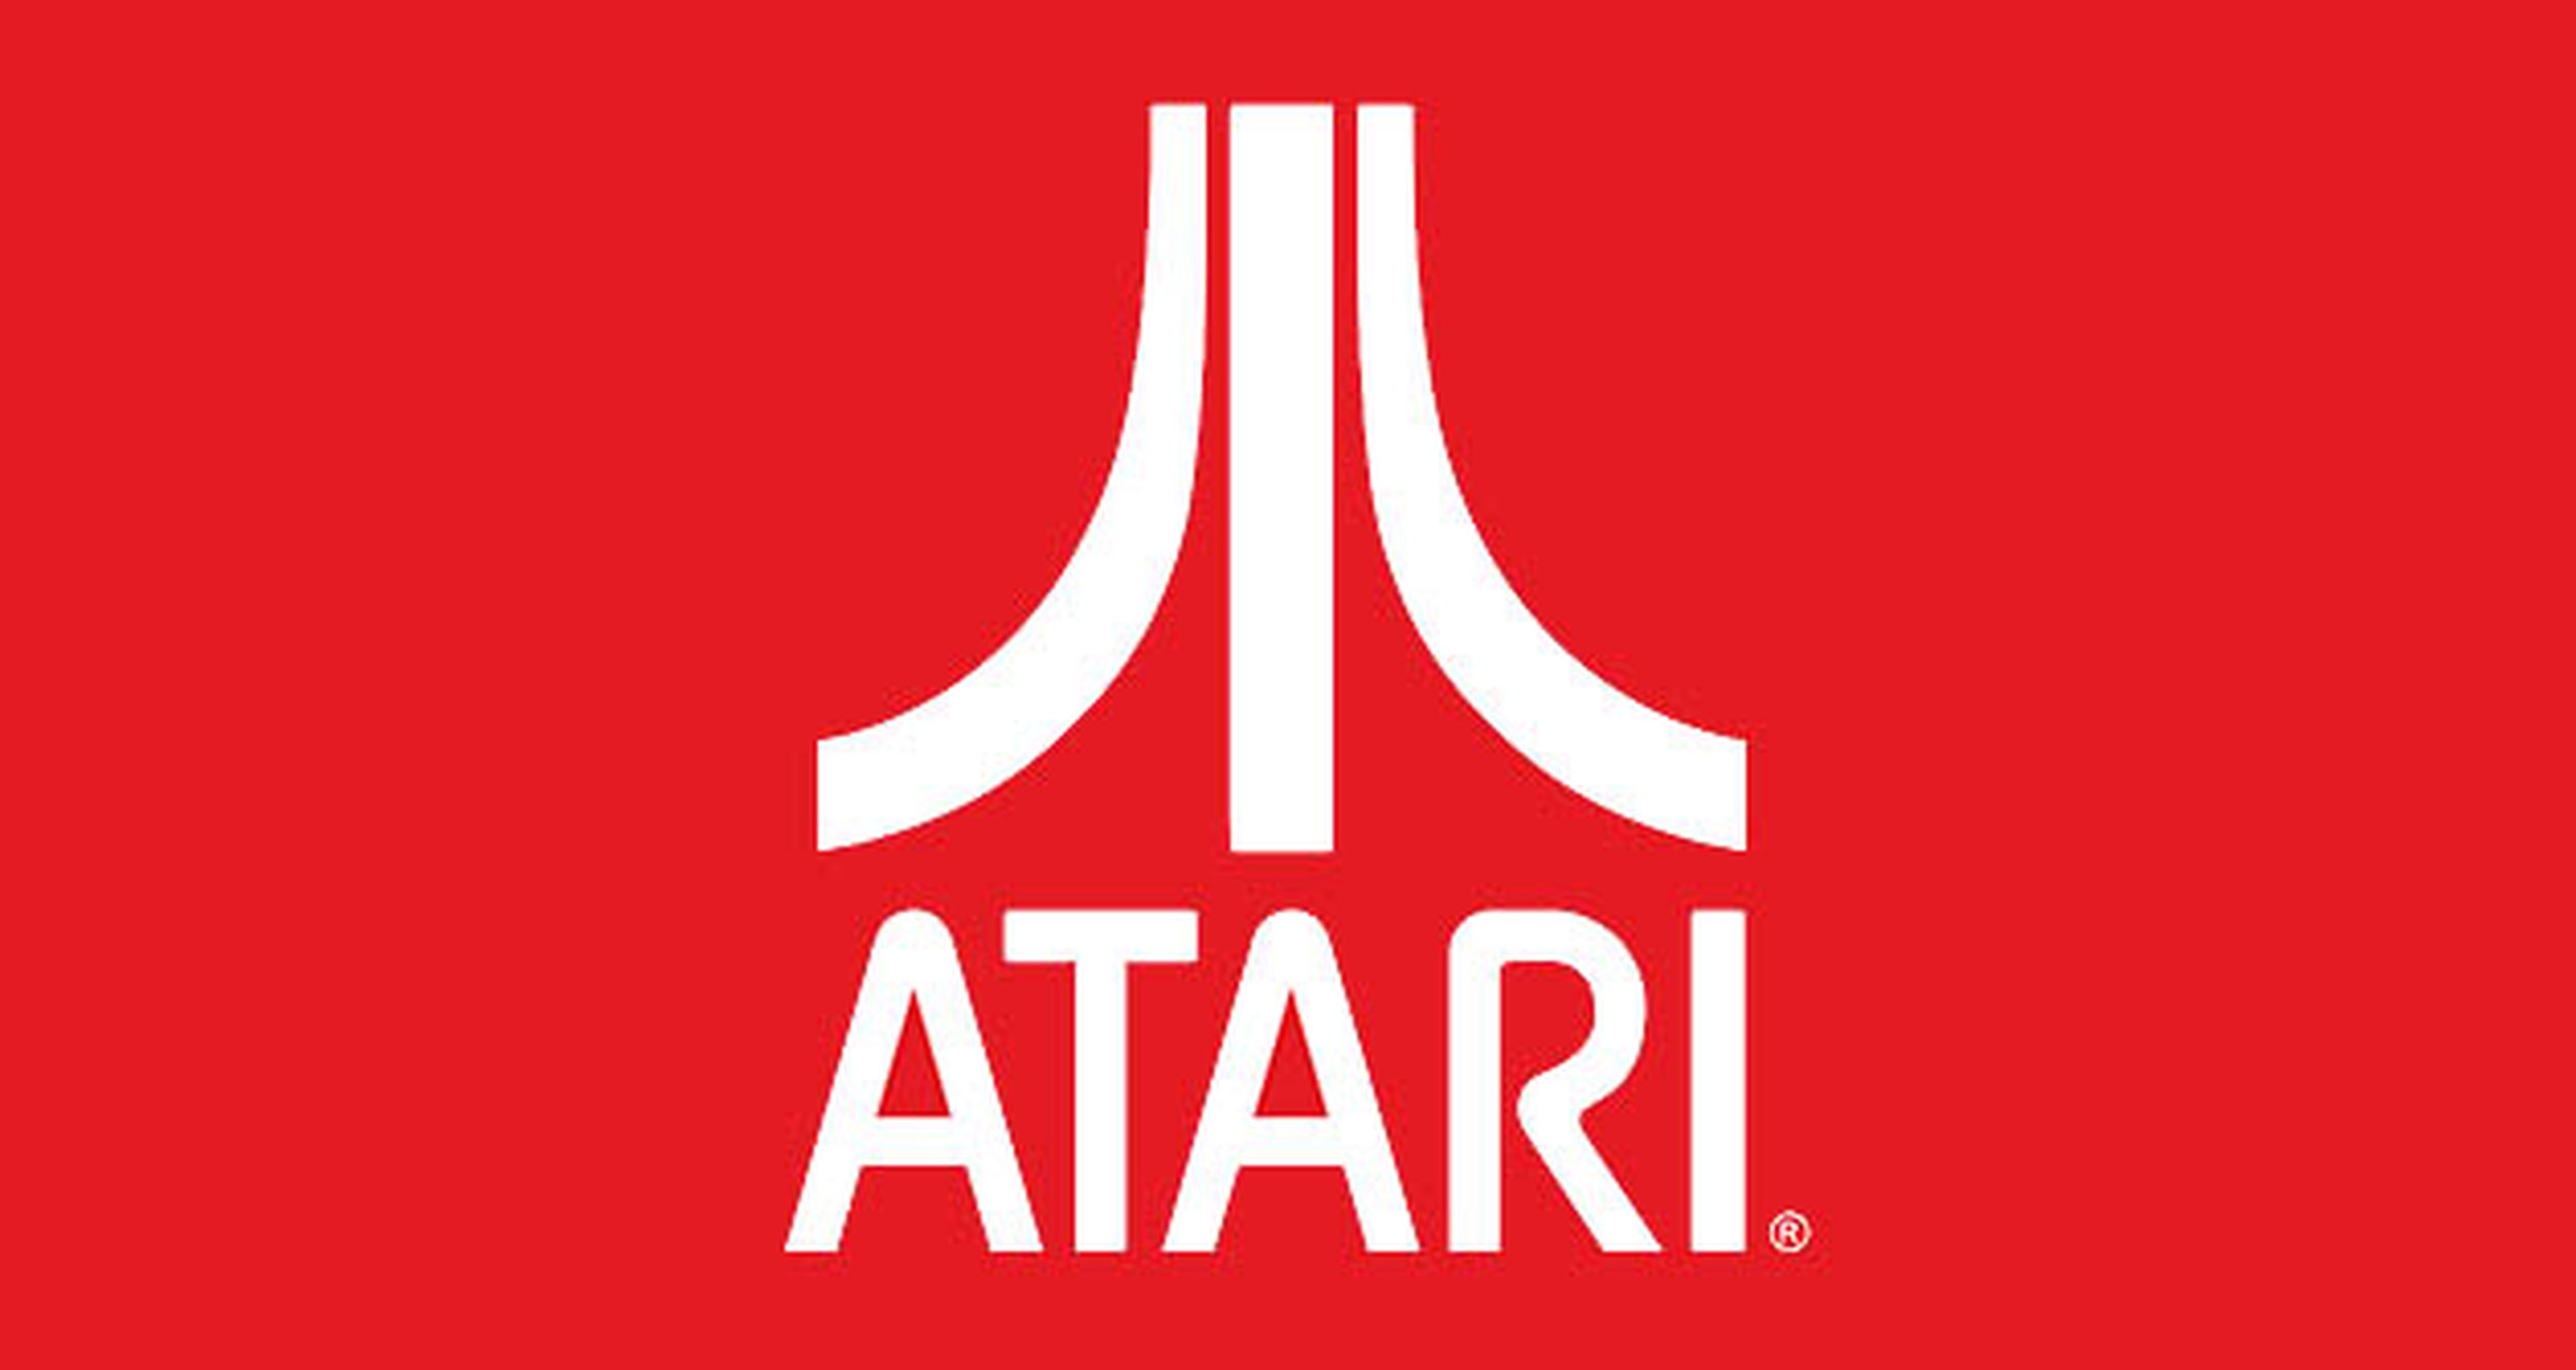 ¡Atari cumple años! deja aquí tu felicitación